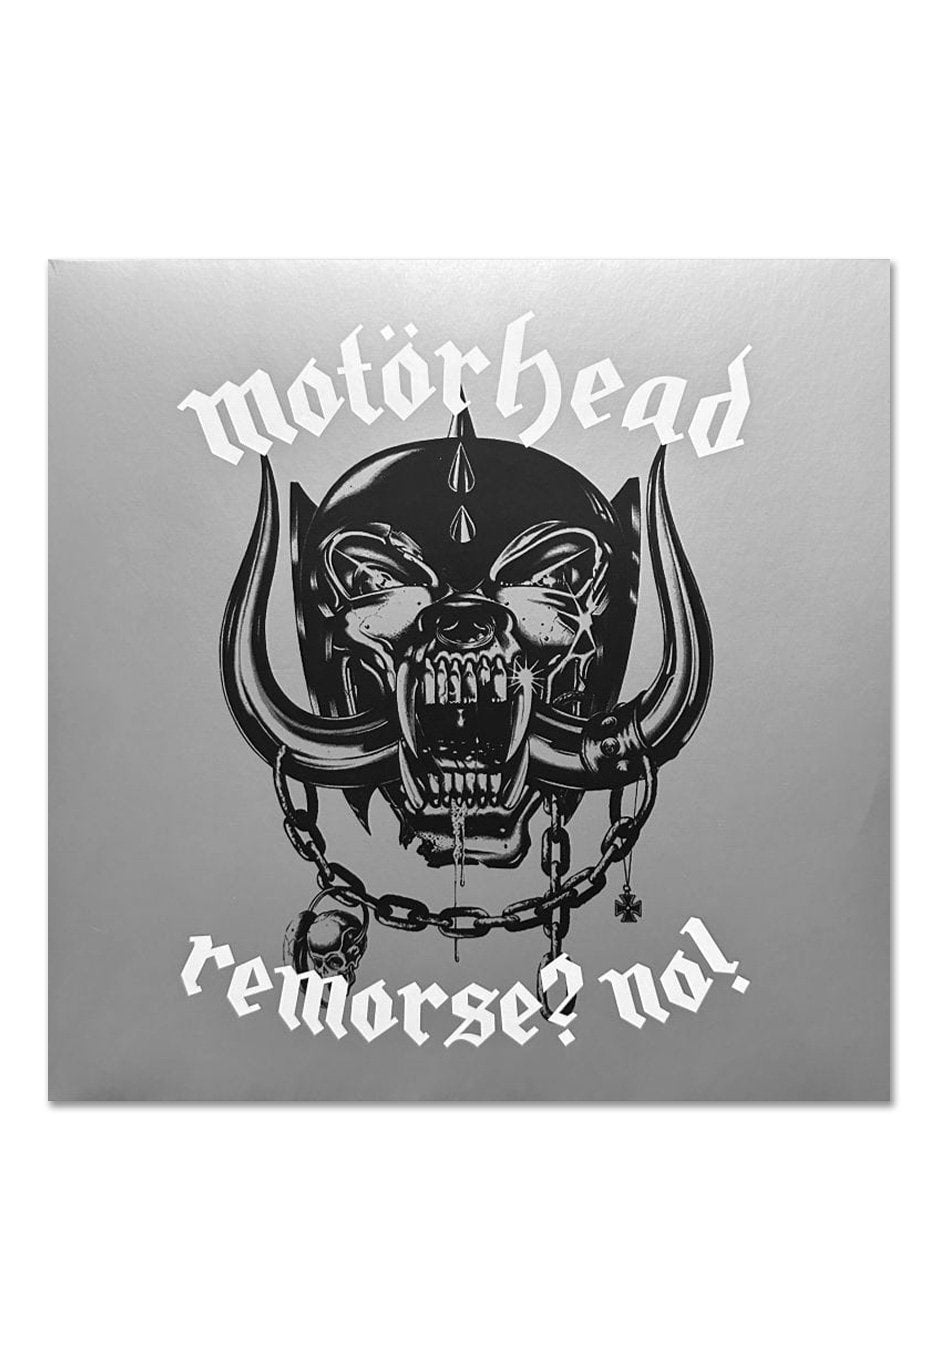 Motörhead - Remorse? No! - 2 CD